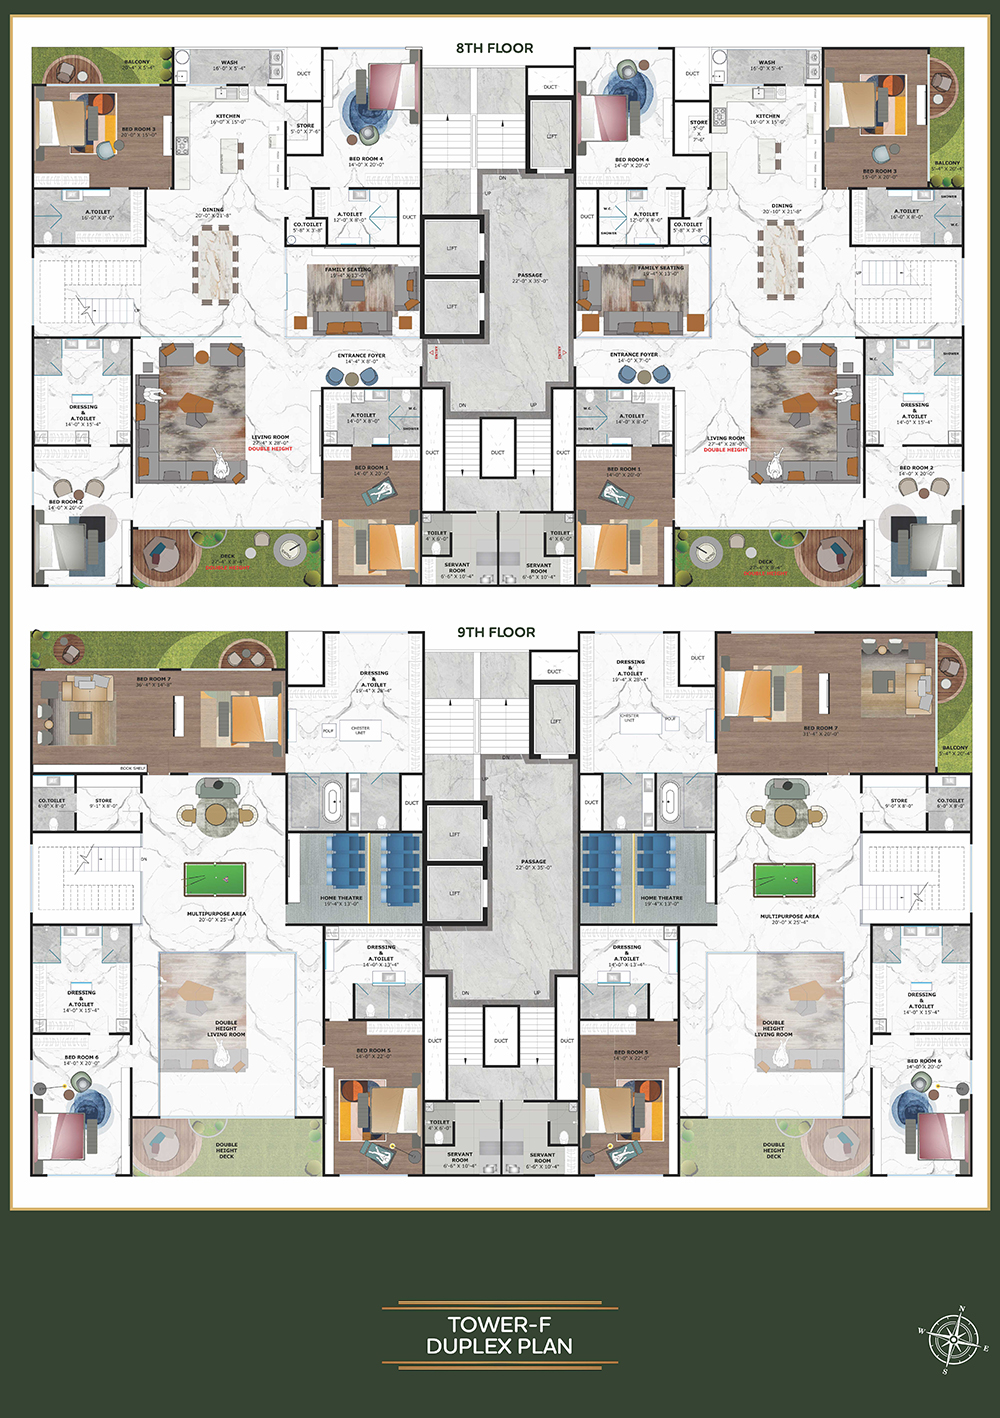 Tower F - Duplex Plan